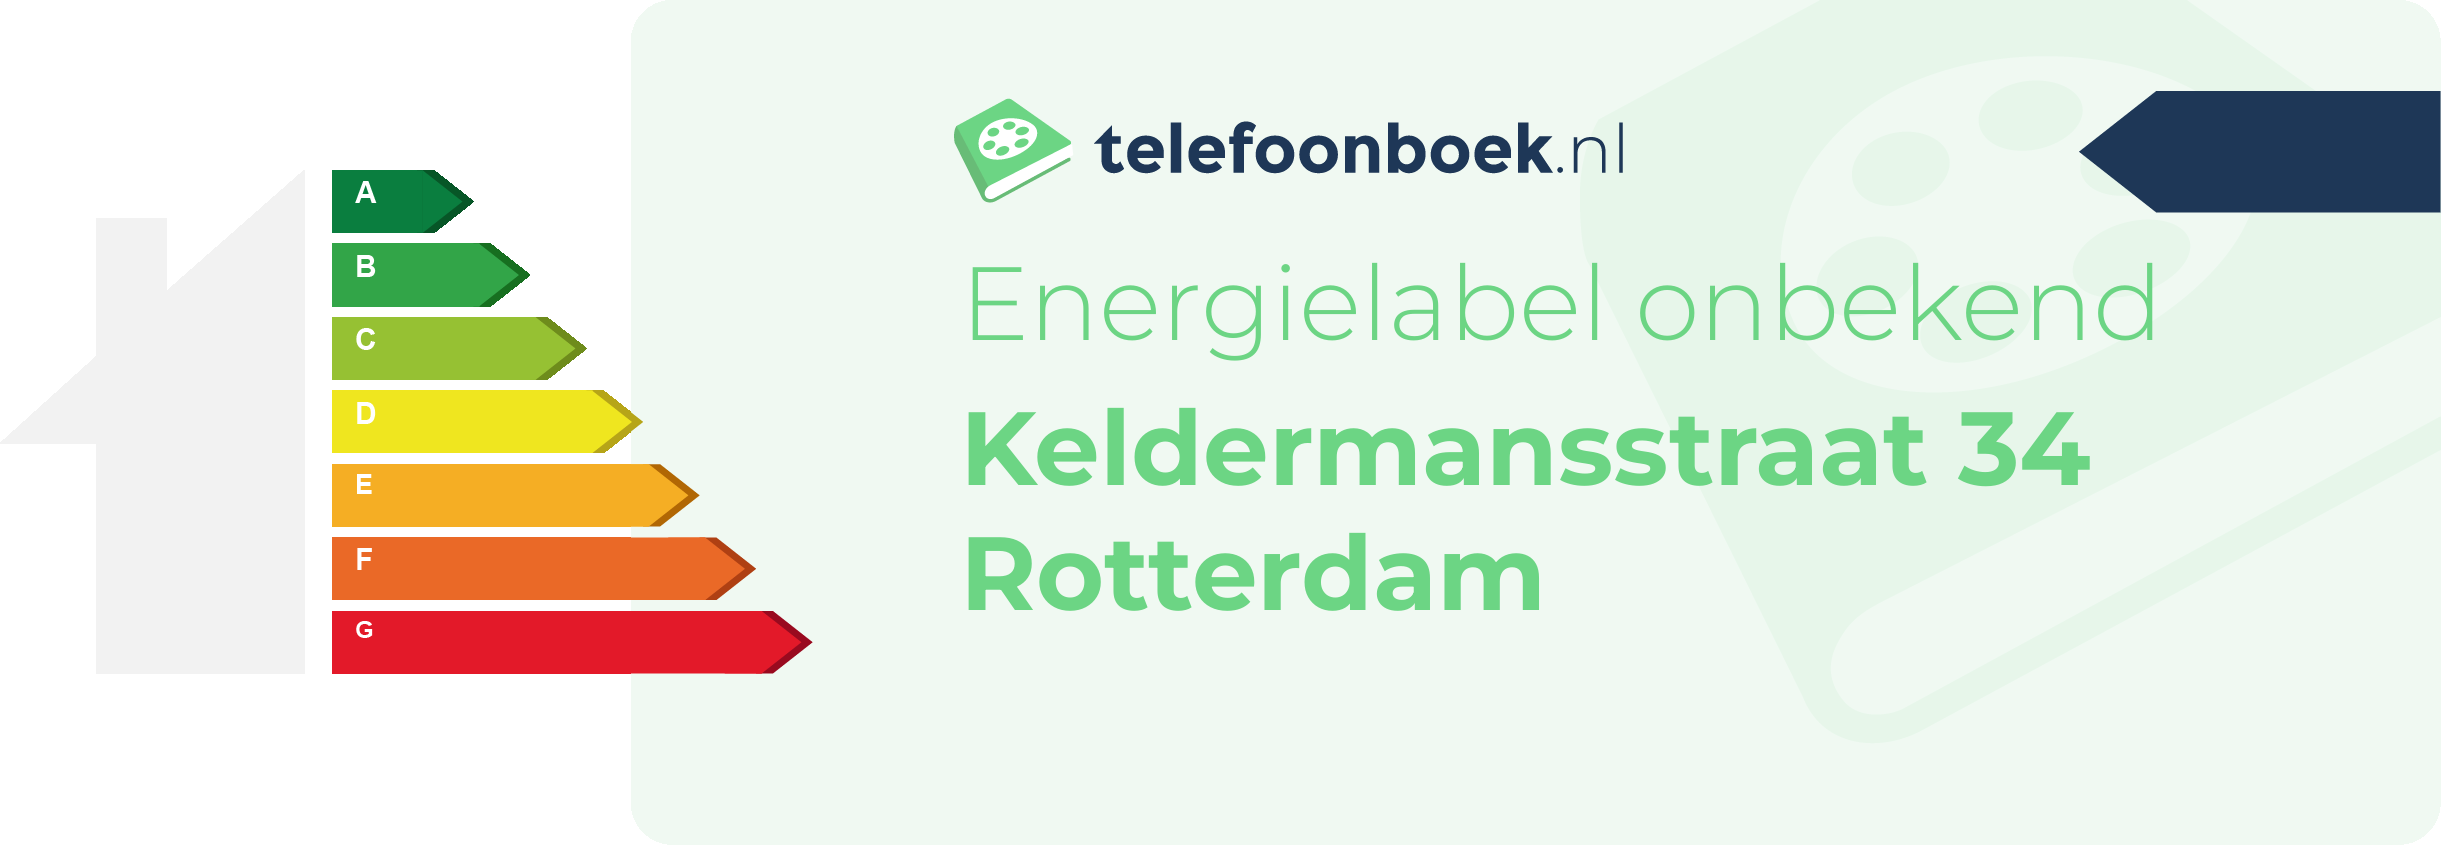 Energielabel Keldermansstraat 34 Rotterdam